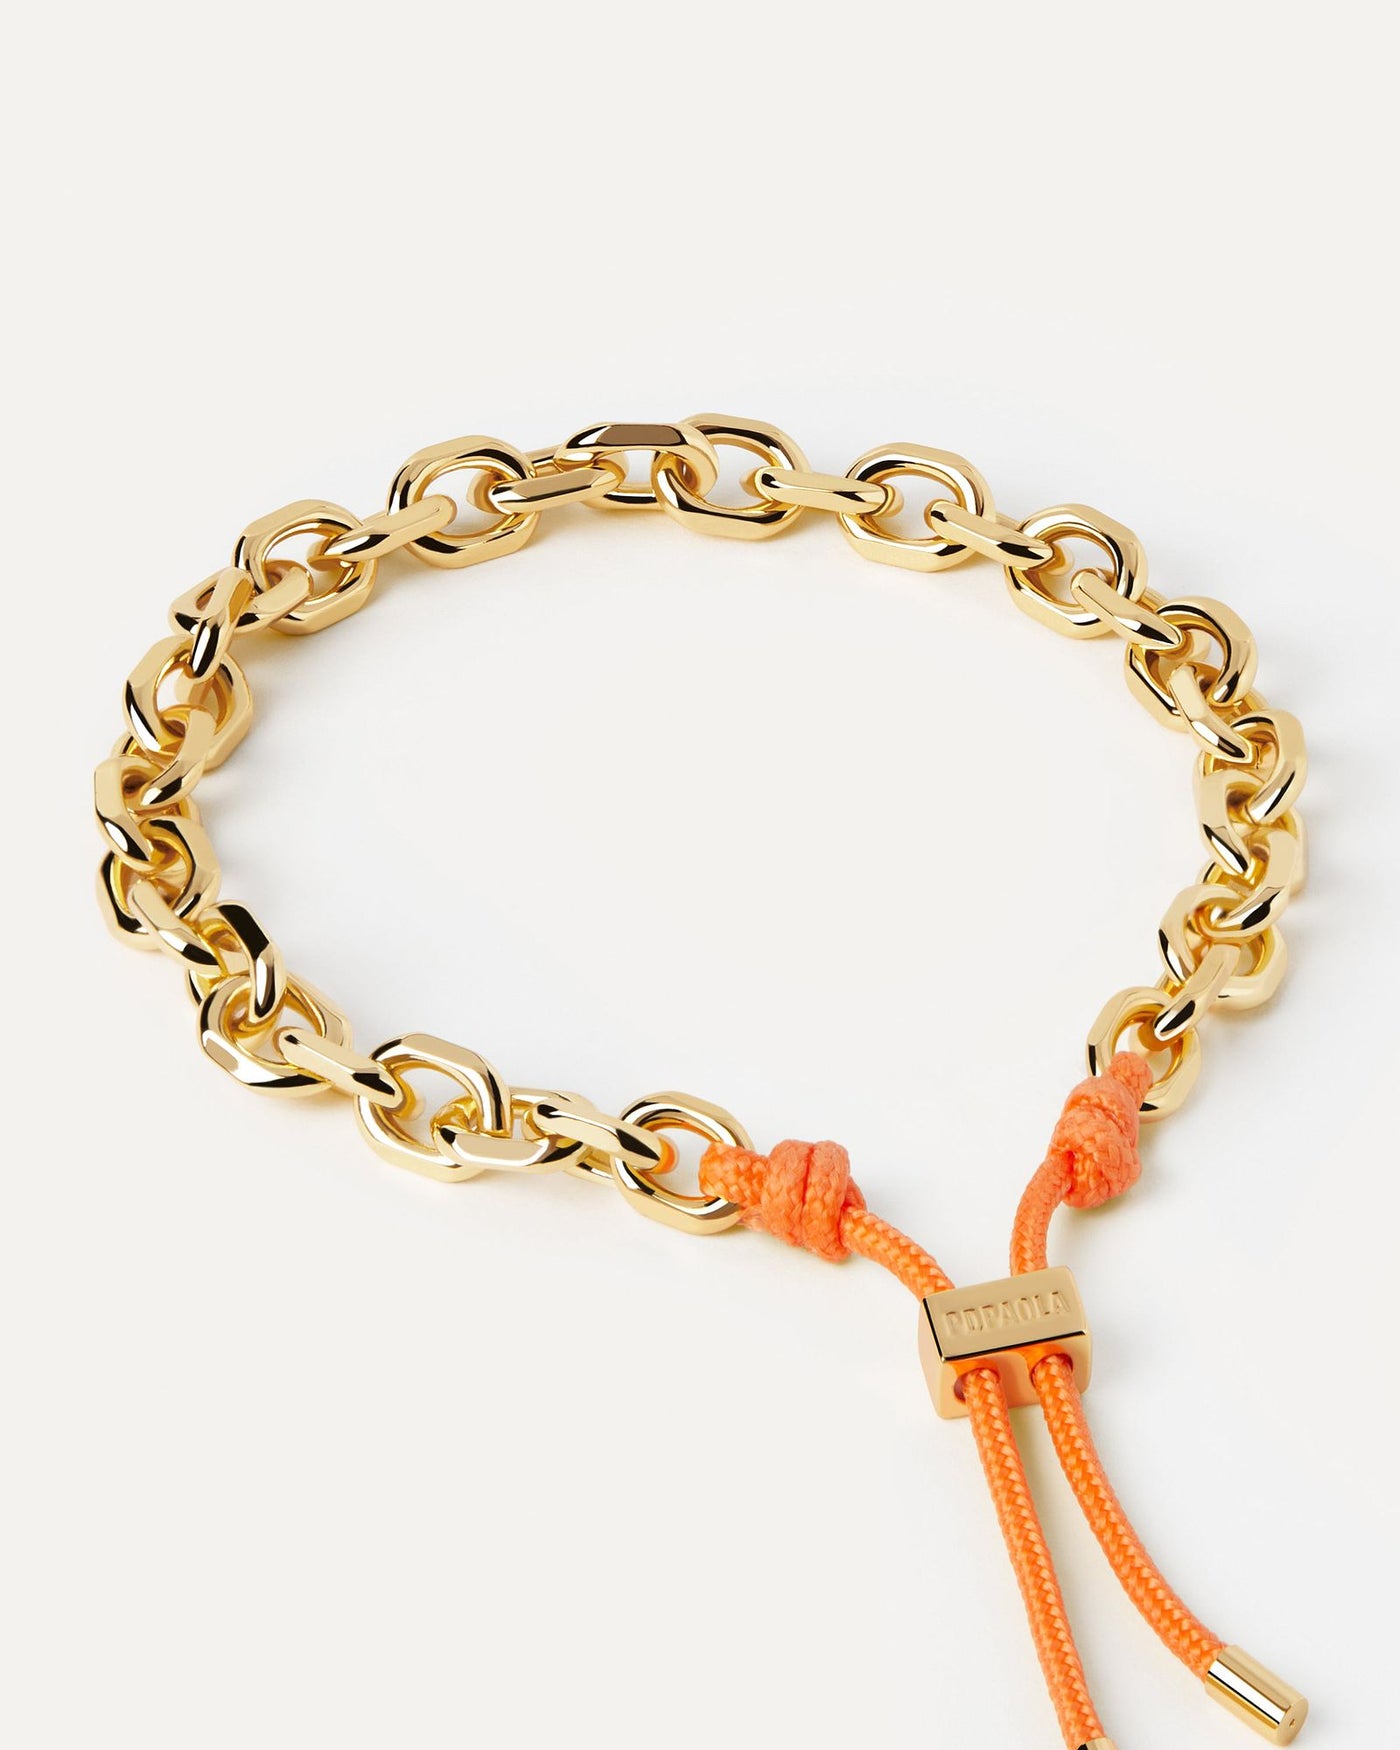 Sélection 2024 | Bracelet Cordon et Chaîne Tangerine Essential. Bracelet chaîne dorée avec corde orange et fermoir coulissant ajustable. Découvrez les dernières nouveautés de chez PDPAOLA. Commandez et recevez votre bijou en toute sérénité. Livraison gratuite.